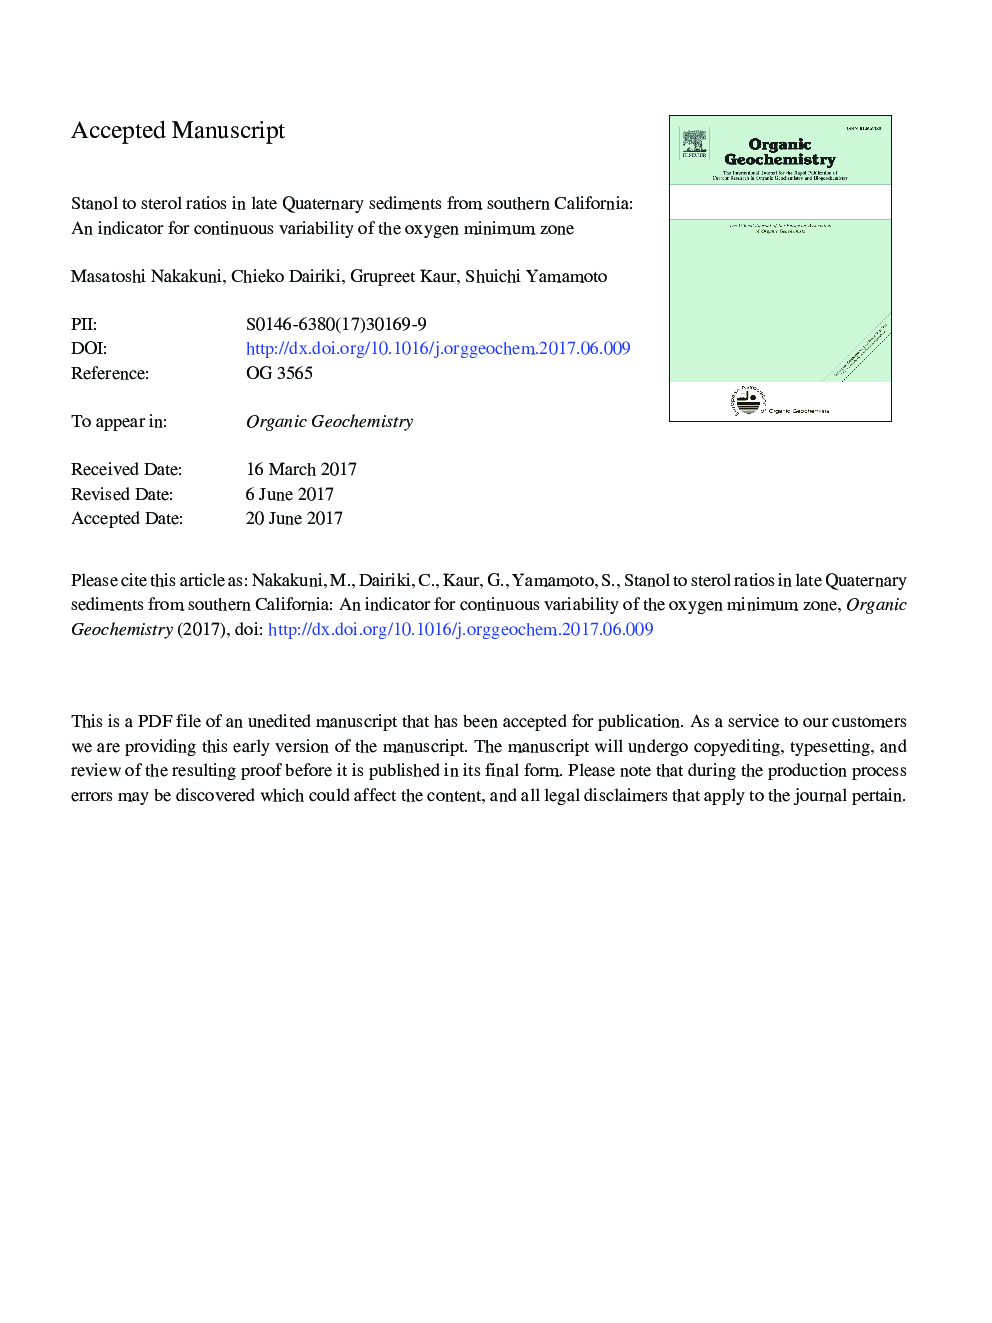 استنول به نسبت استرول در اواخر رسوبات کواترنری از جنوب کالیفرنیا: شاخص تغییرات مداوم منطقه اکسیژن حداقل 